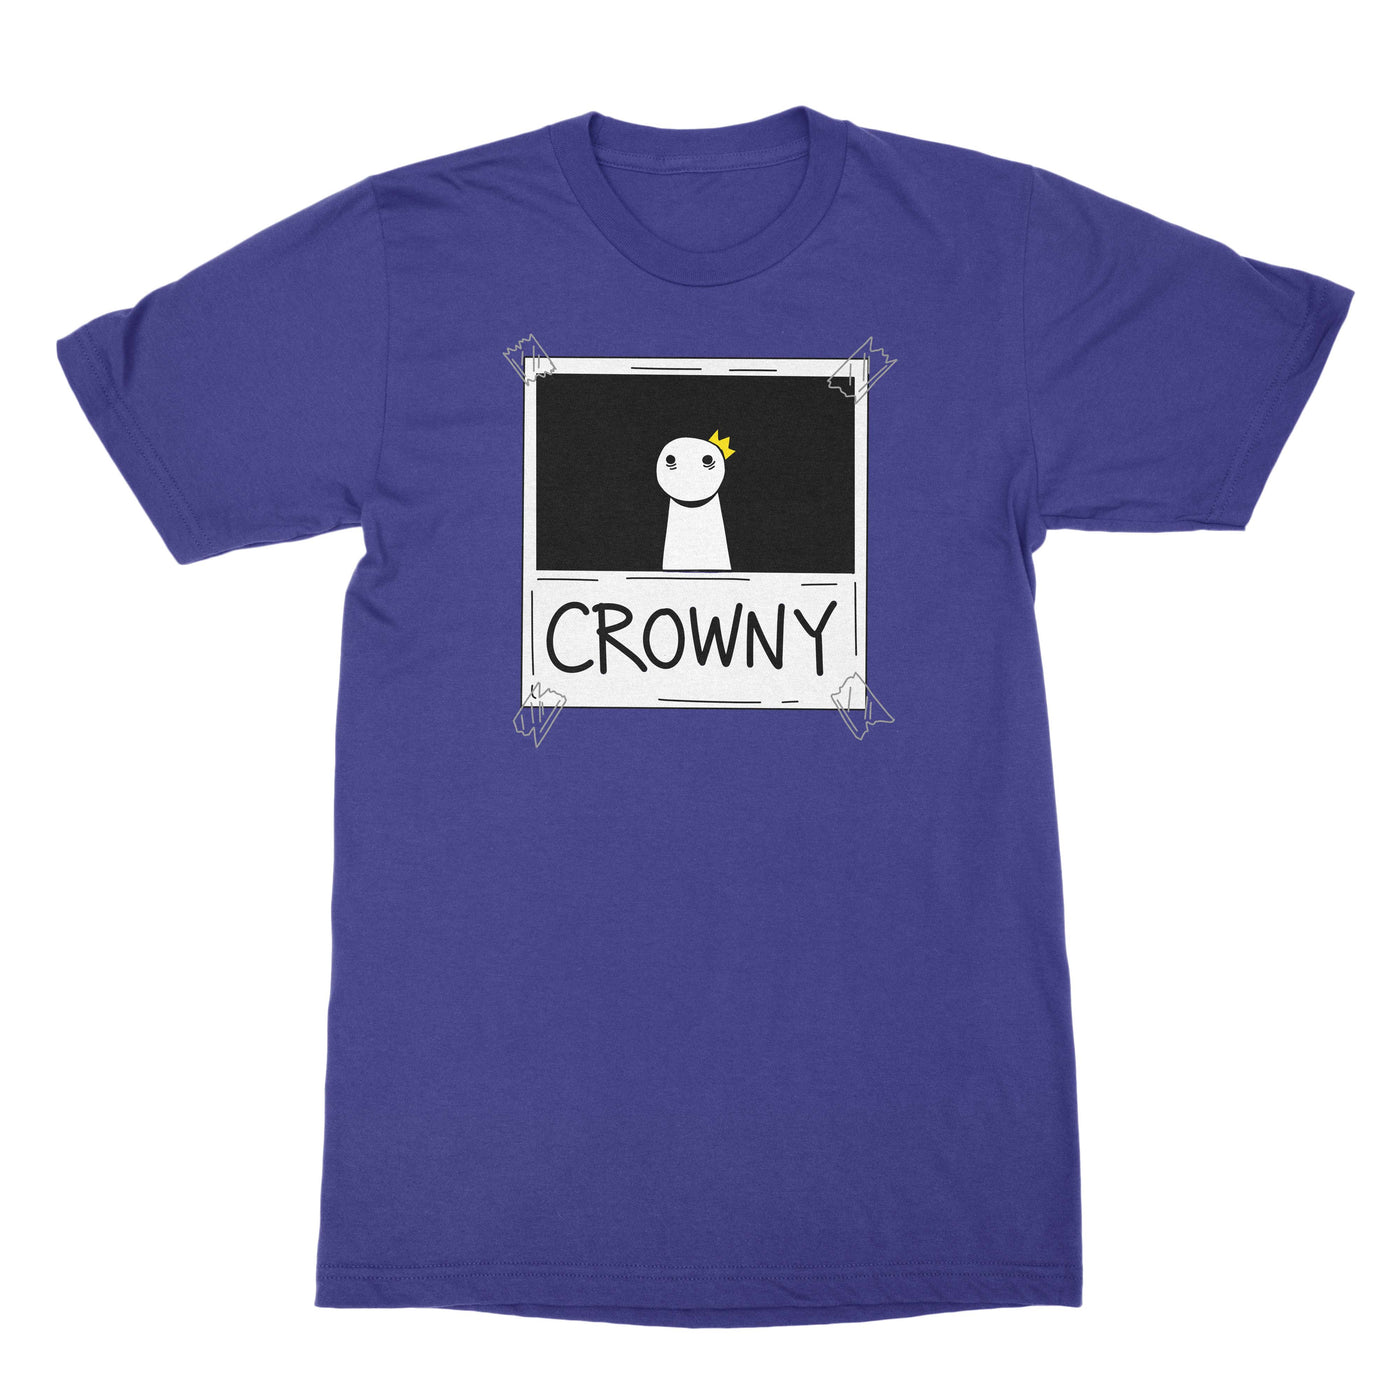 Crowny - Unisex Shirt Purple Rush